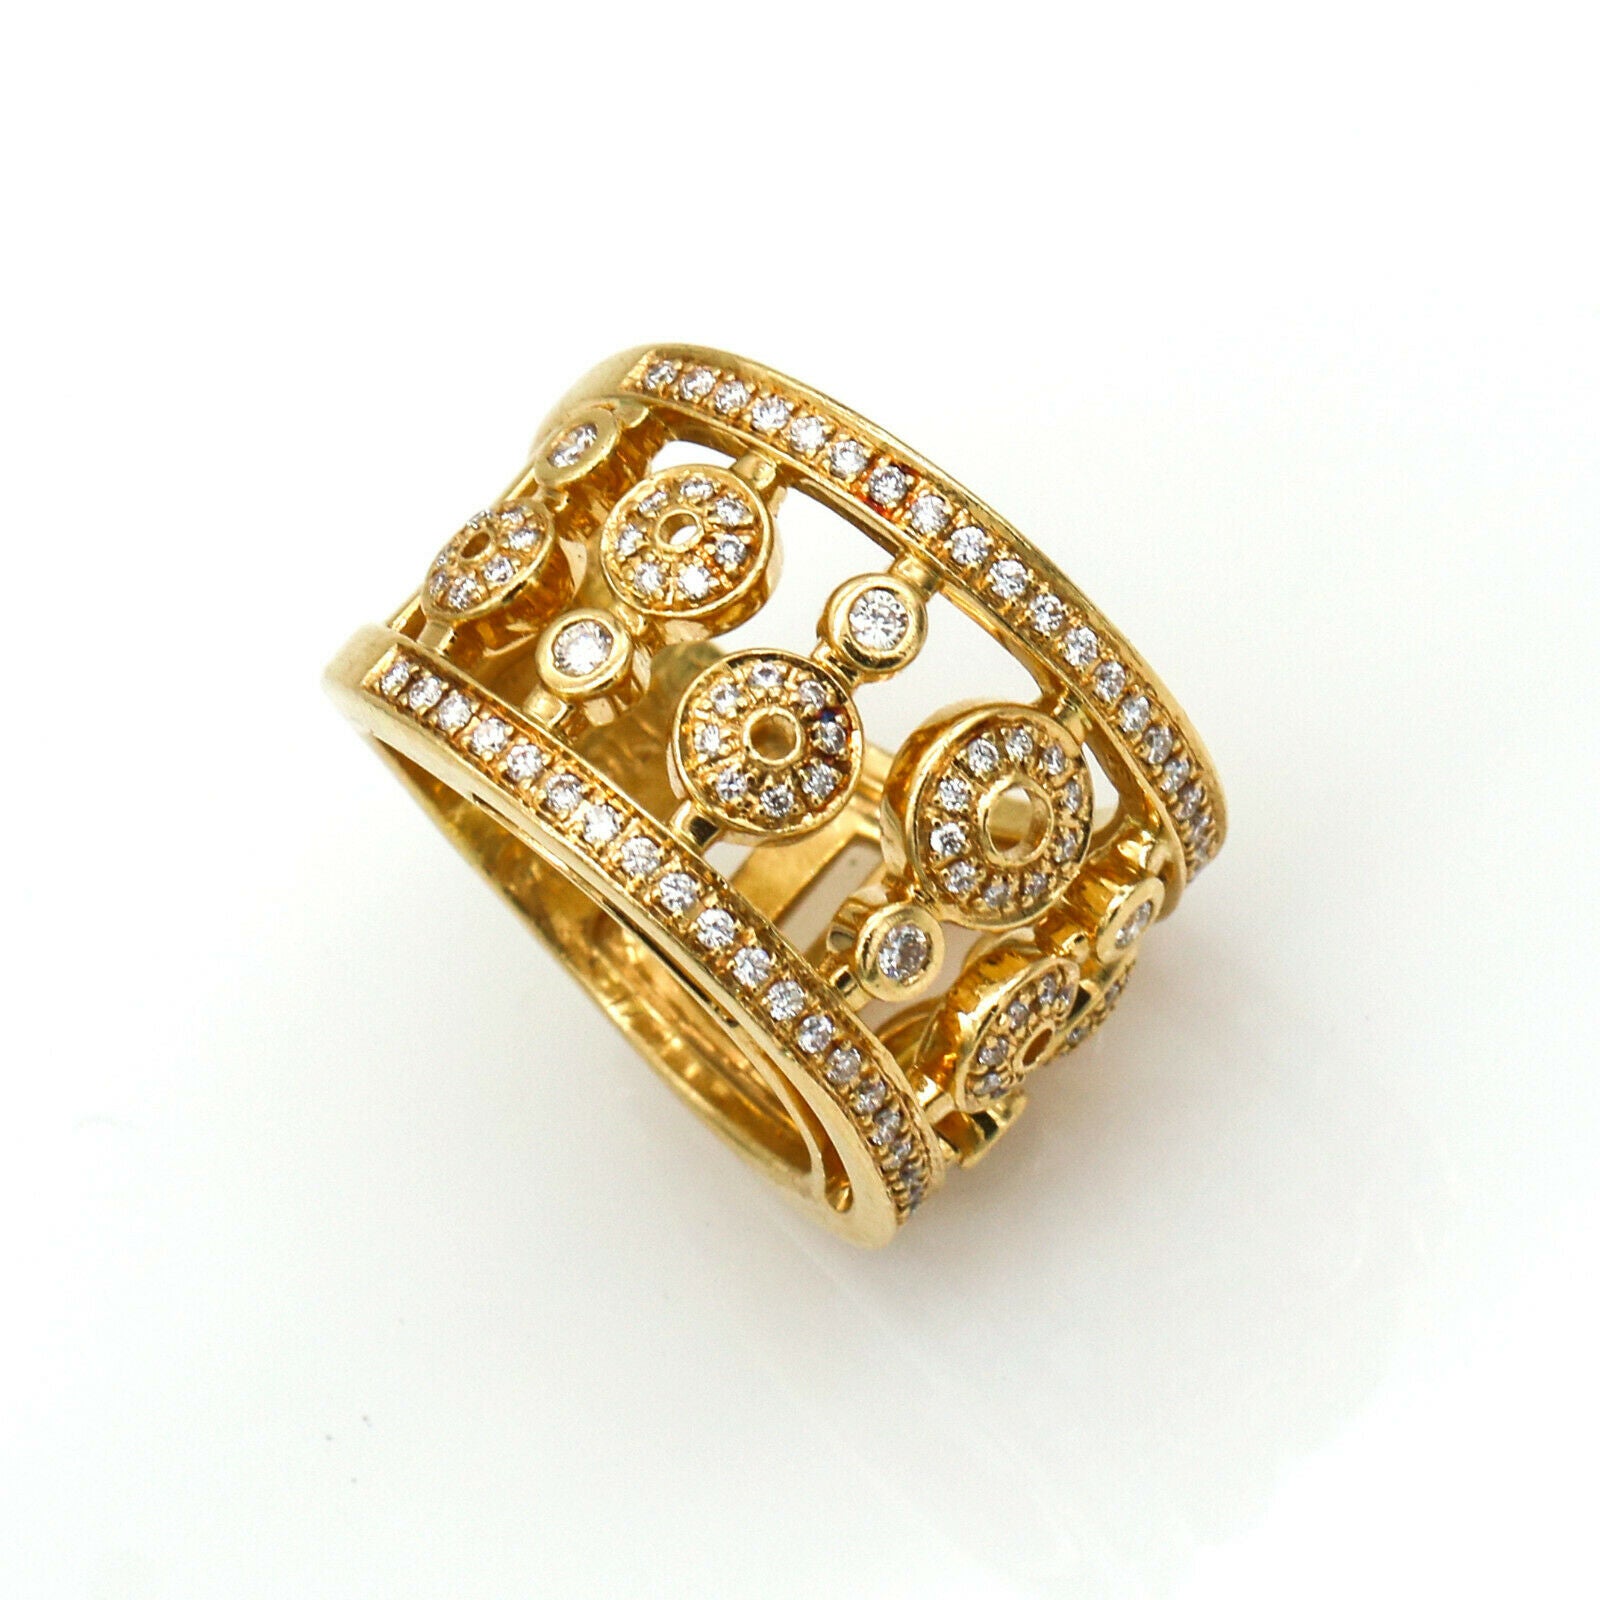 Di Modolo Tempia Diamond Wide Band Ring in 18k Yellow Gold